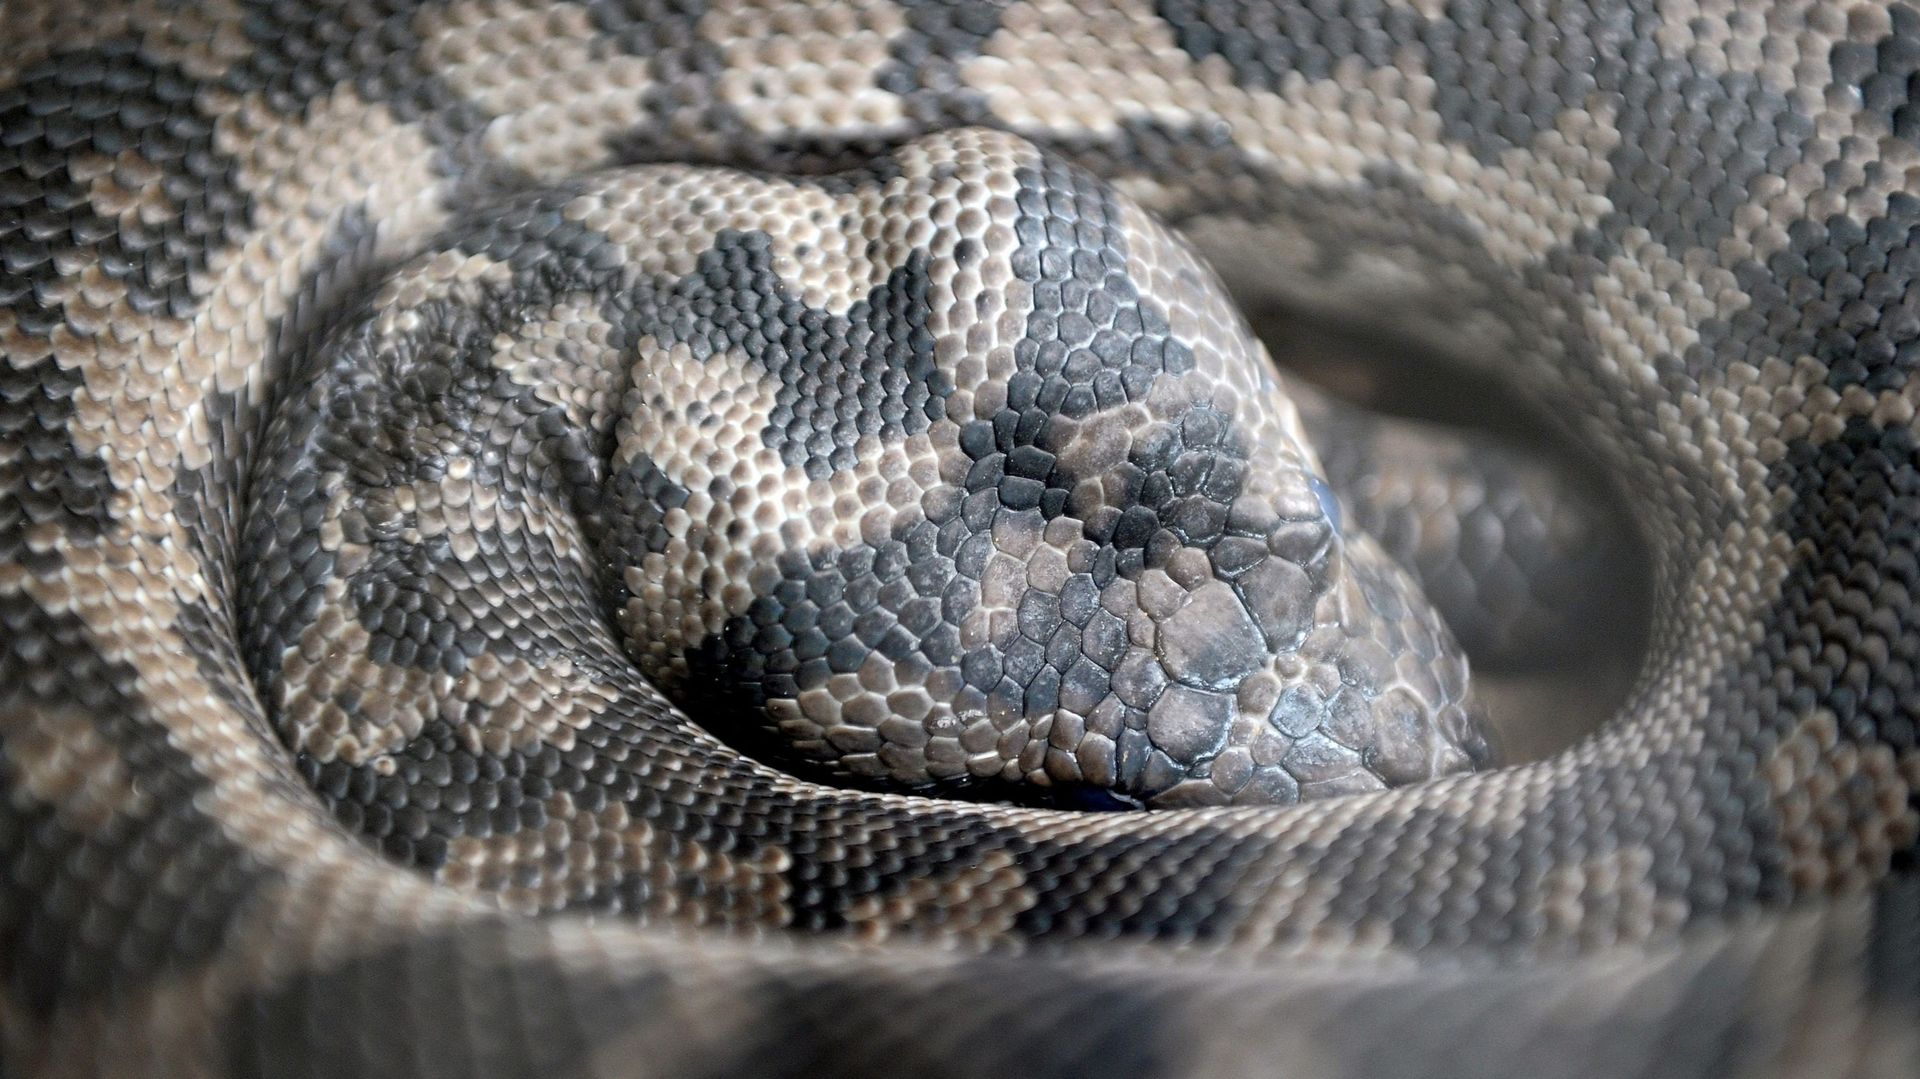 Le nombre d’abandon de reptiles en augmentation : un serpent de 4,5 mètres retrouvé dans une réserve naturelle près d’Anvers. Photo d’illustration.